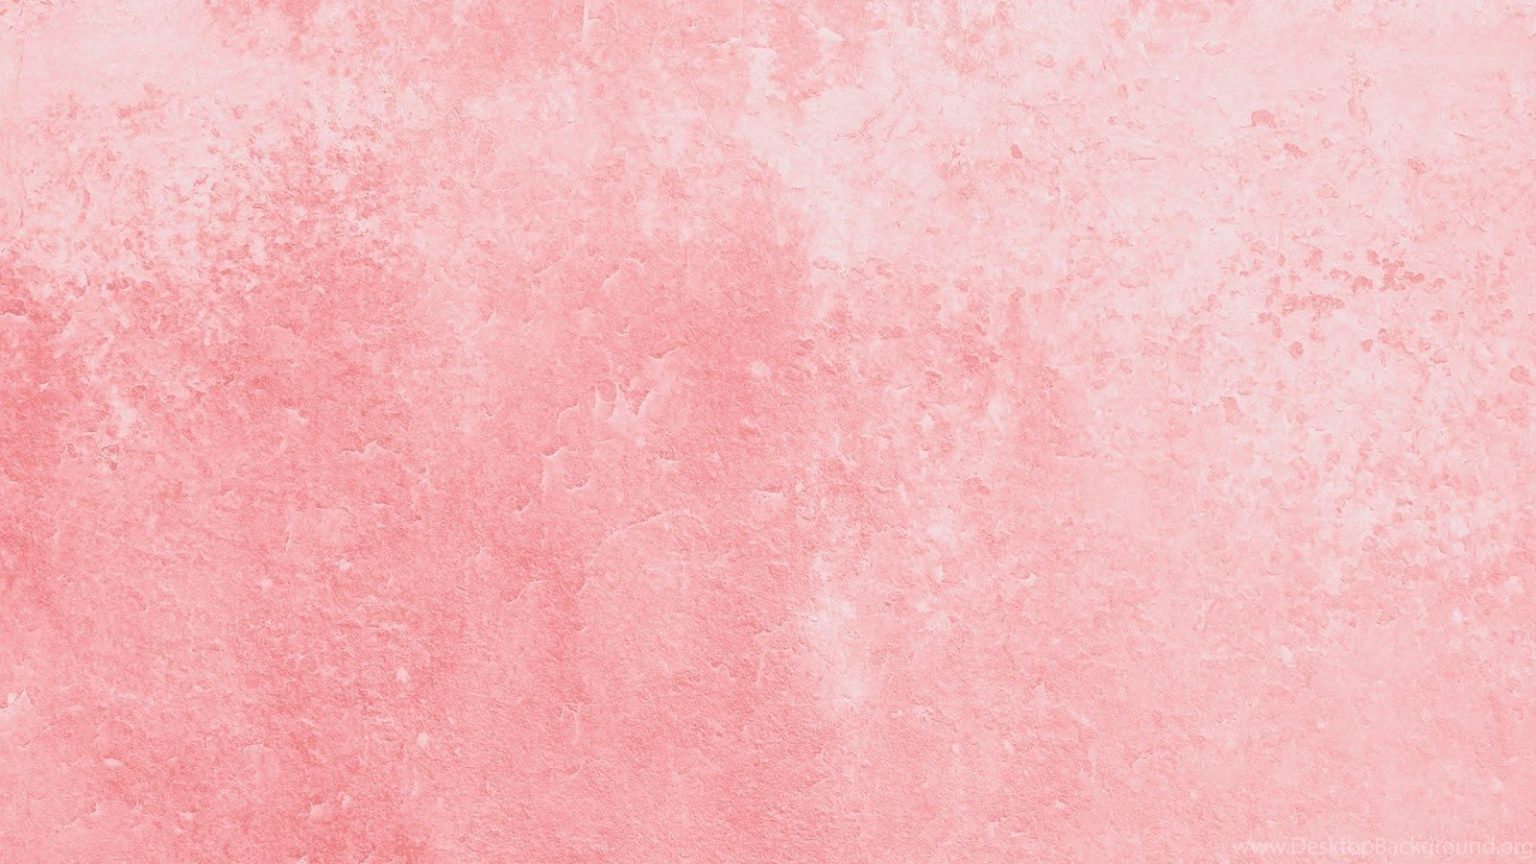 Hình nền màu hồng nhạt cute